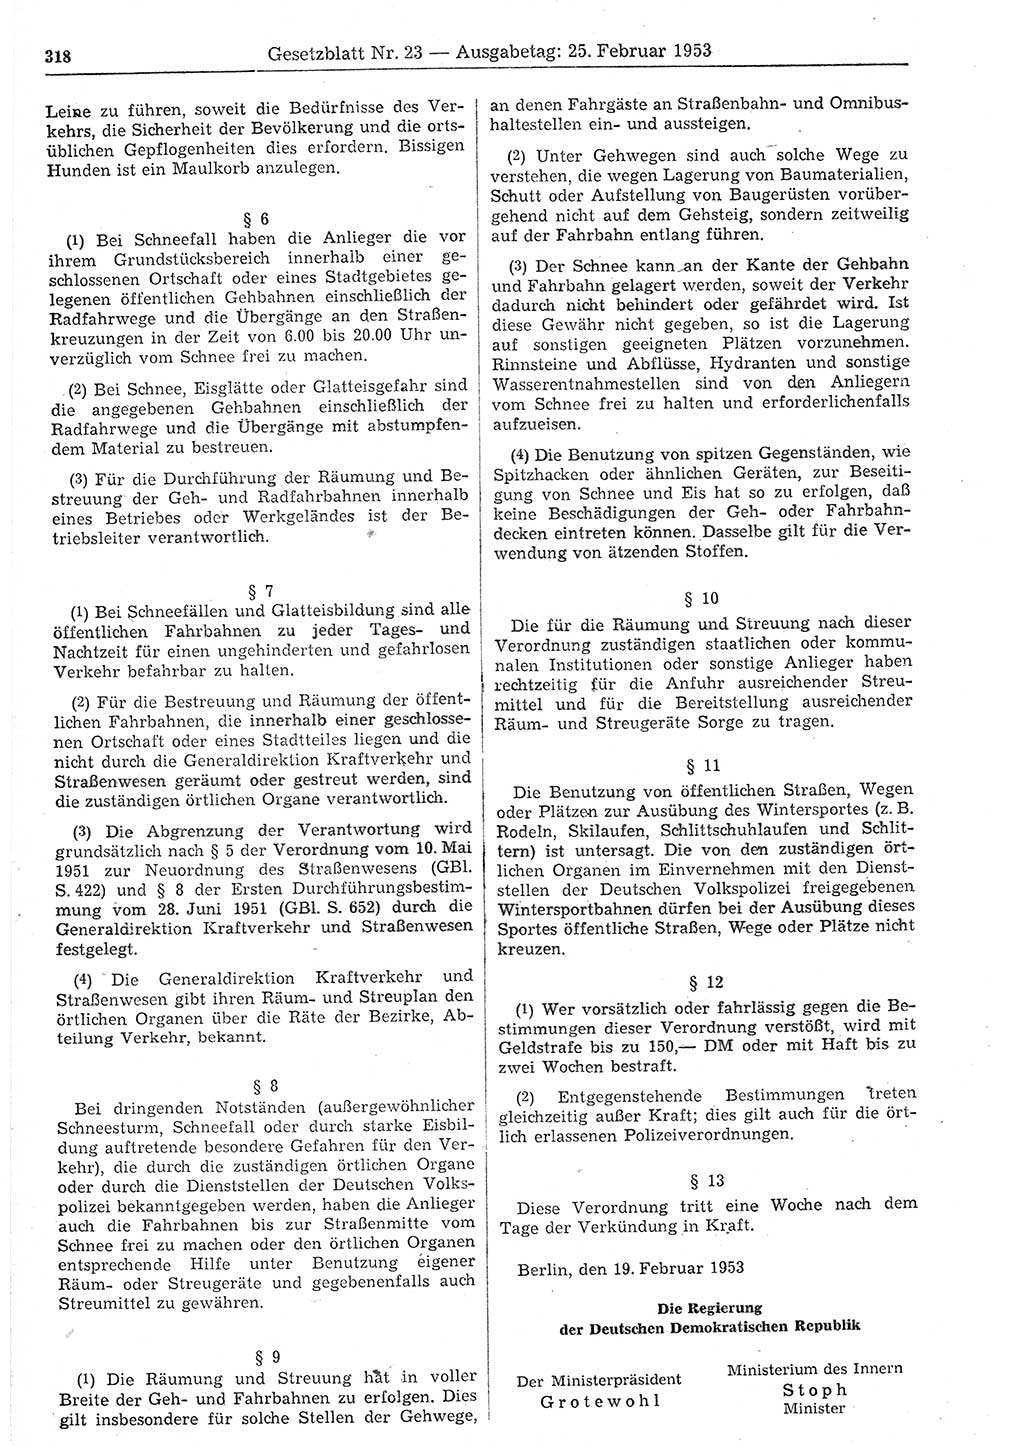 Gesetzblatt (GBl.) der Deutschen Demokratischen Republik (DDR) 1953, Seite 318 (GBl. DDR 1953, S. 318)